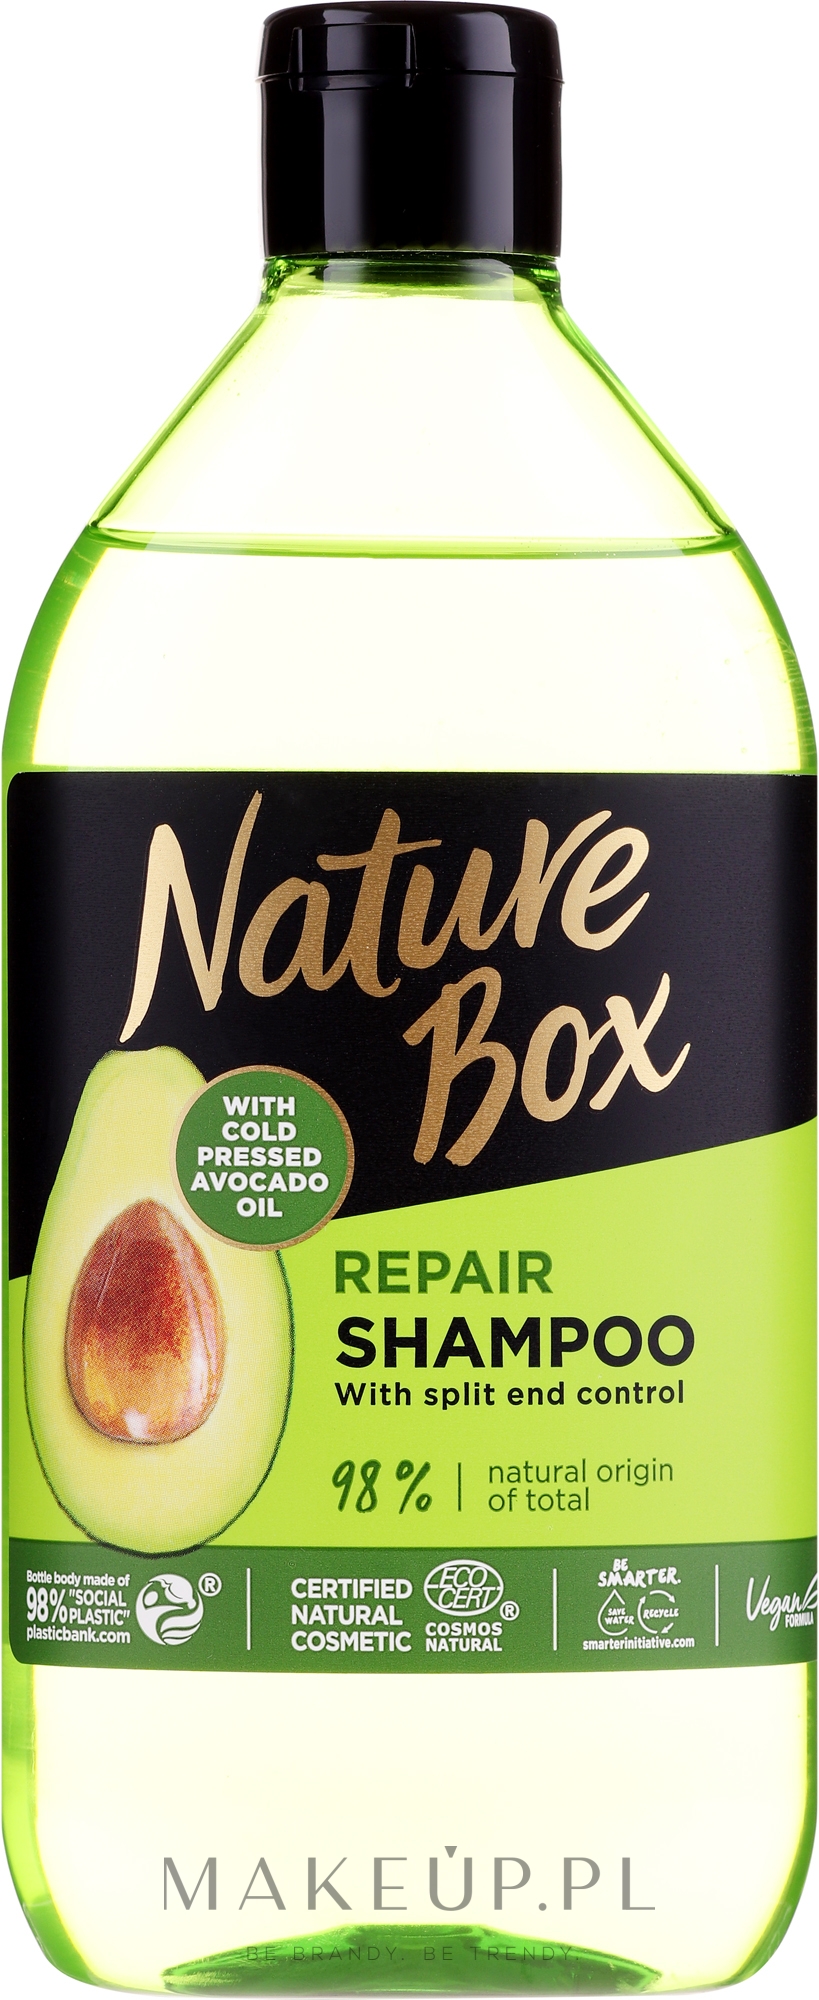 szampon prostujący wlosy nature box